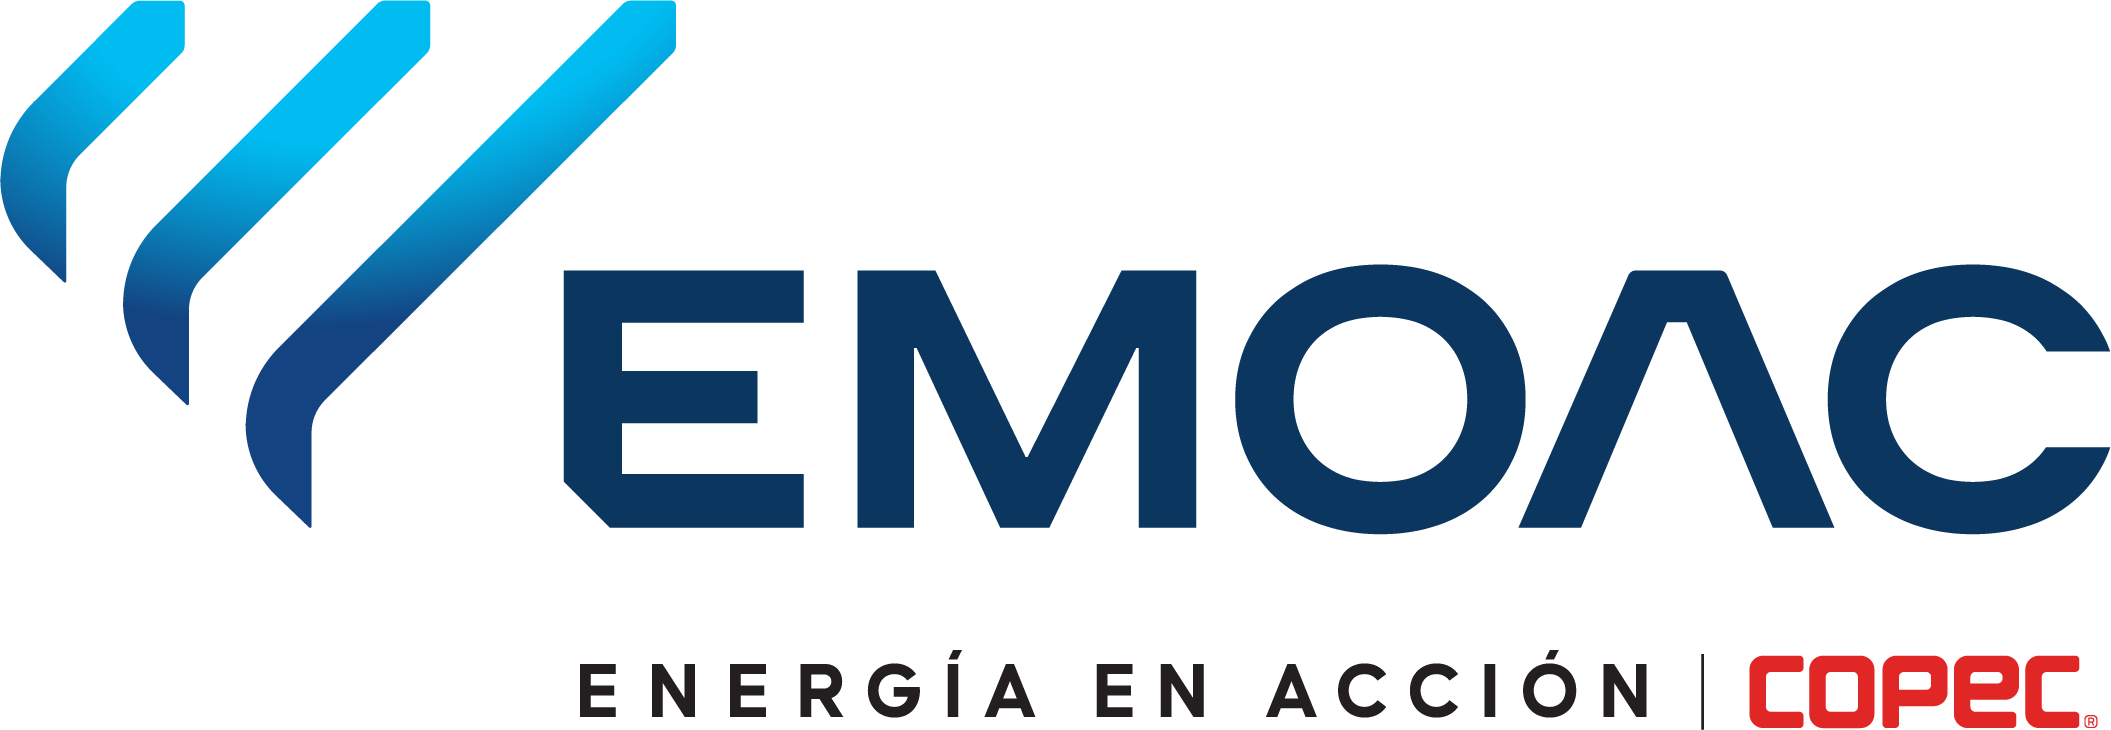 EMOAC. Energía en acción | Copec